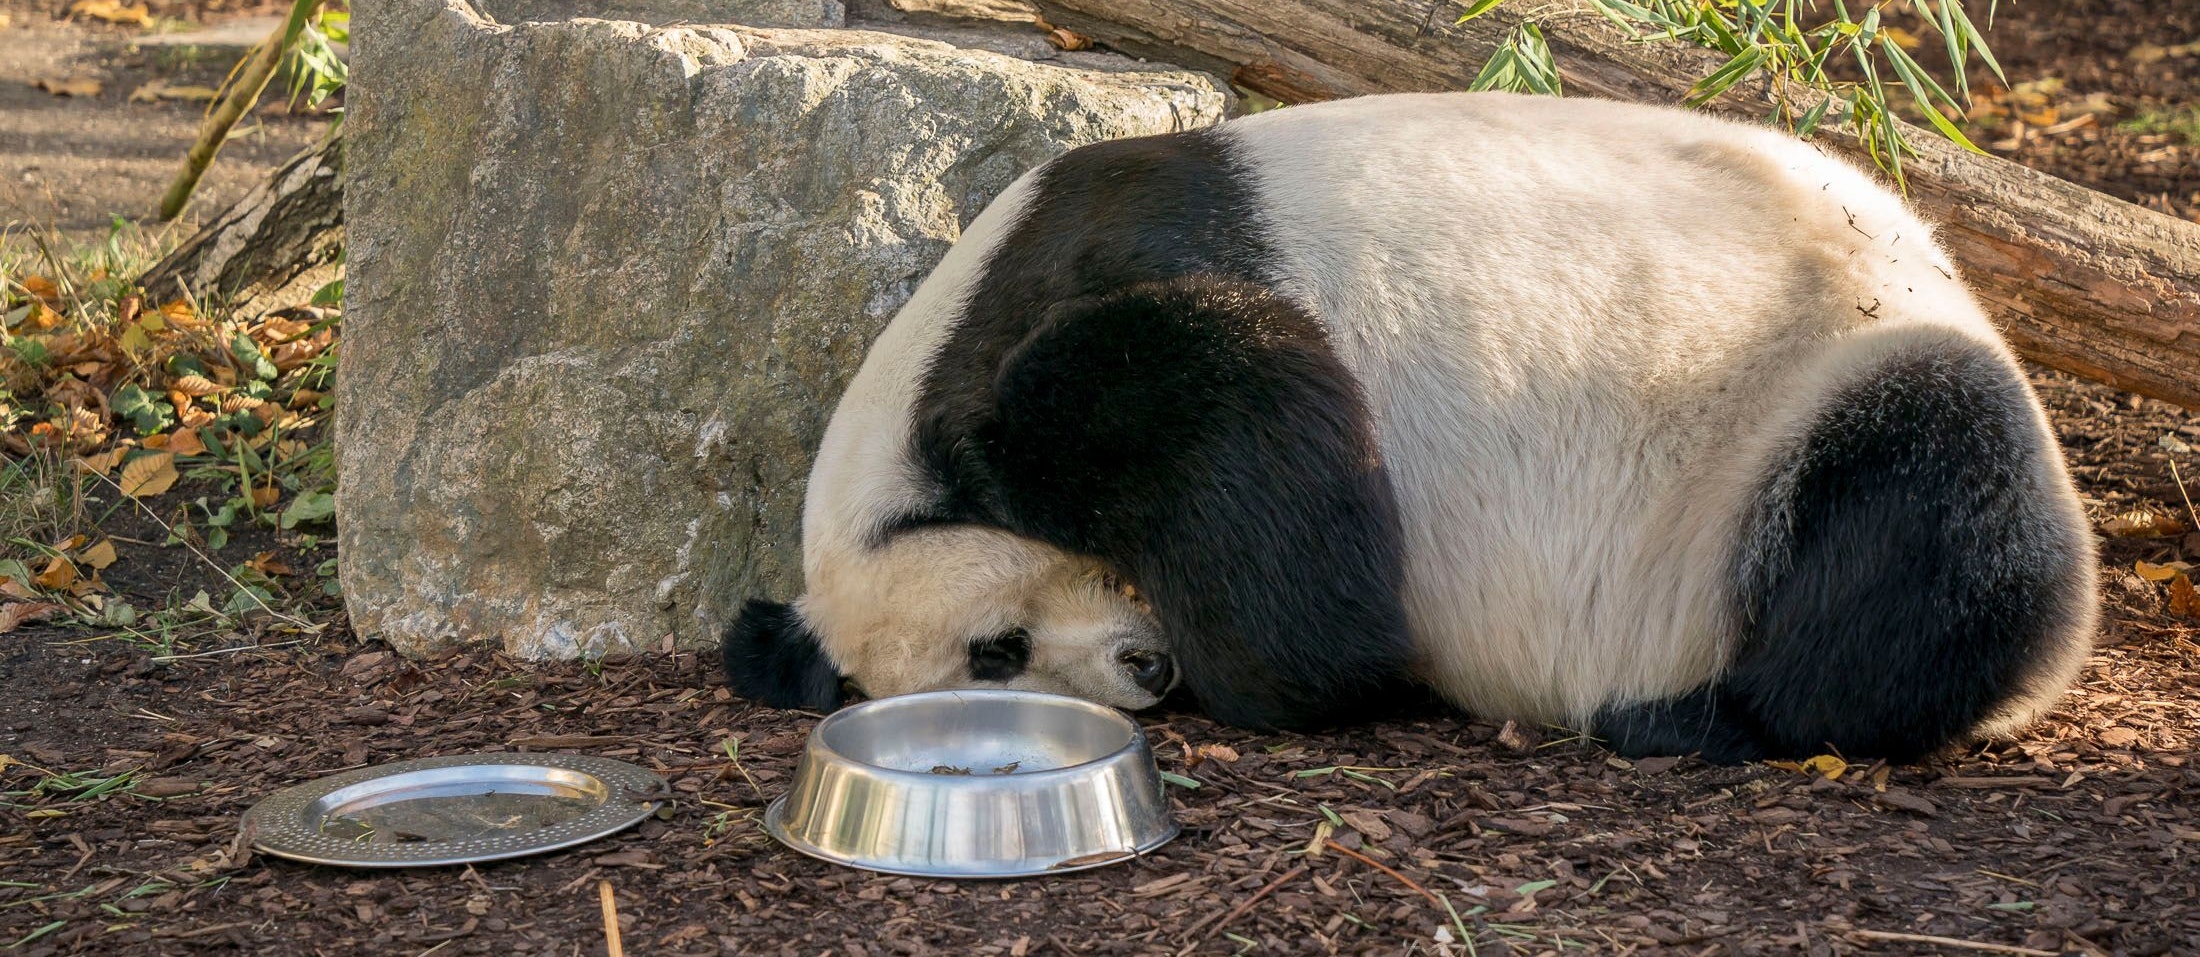 Schlafen, fressen, schauen und dann wieder von vorne: die Pandas im Tiergarten Schönbrunn